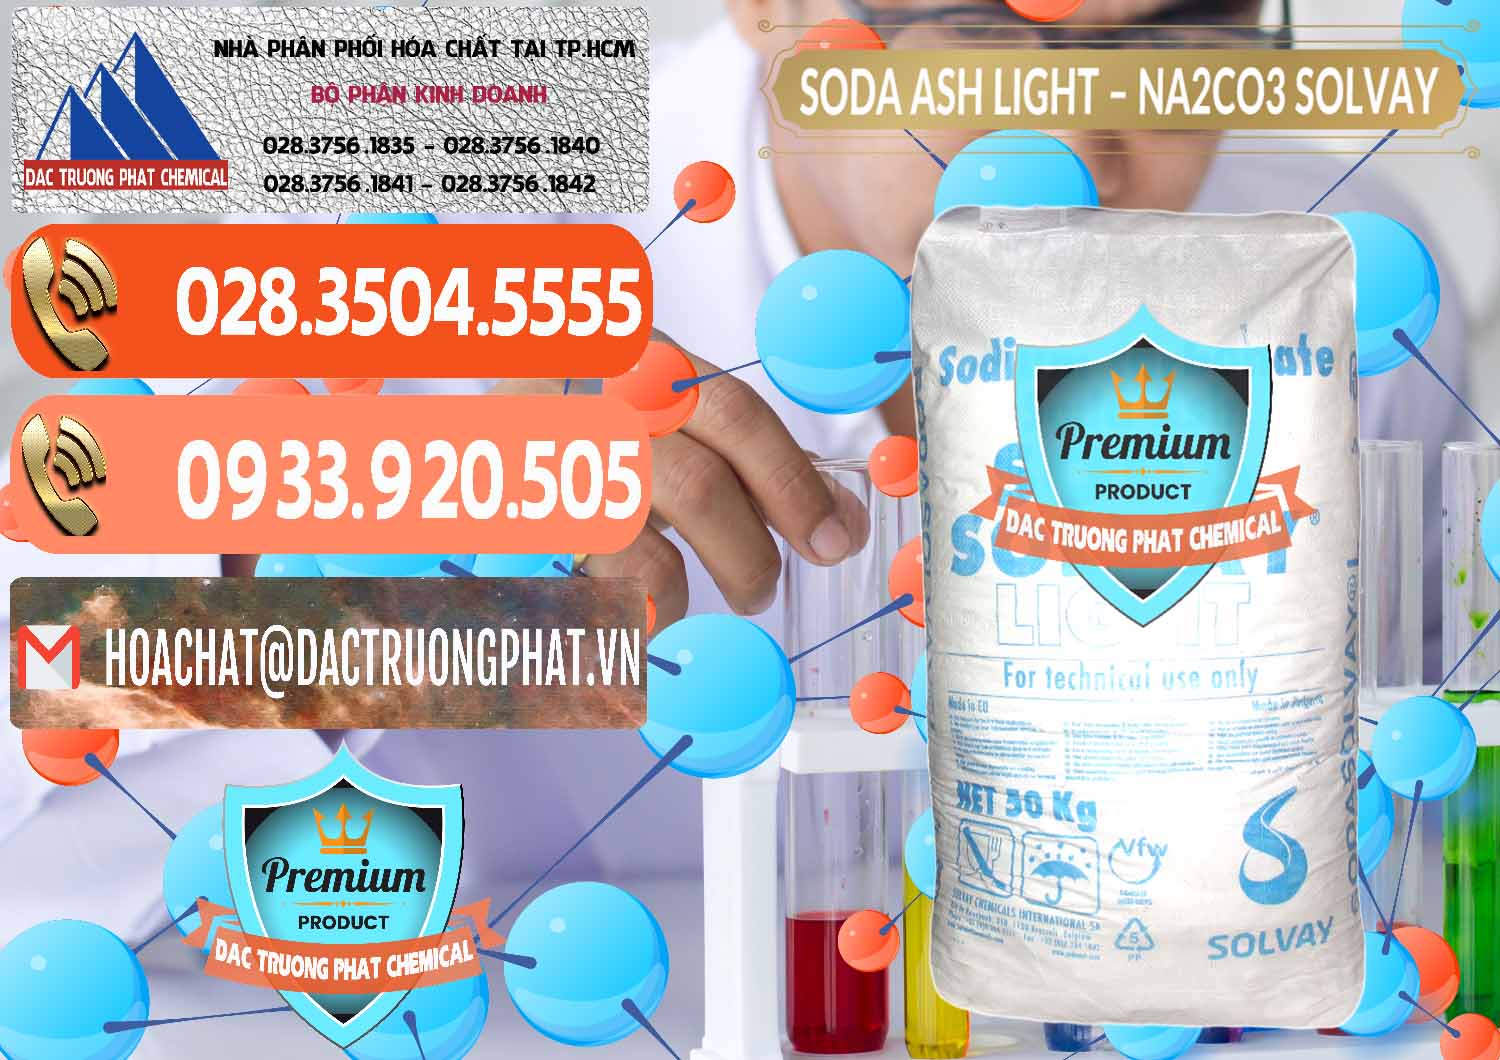 Chuyên cung cấp & bán Soda Ash Light - NA2CO3 Solvay Bulgaria - 0126 - Công ty kinh doanh - phân phối hóa chất tại TP.HCM - hoachatmientay.com